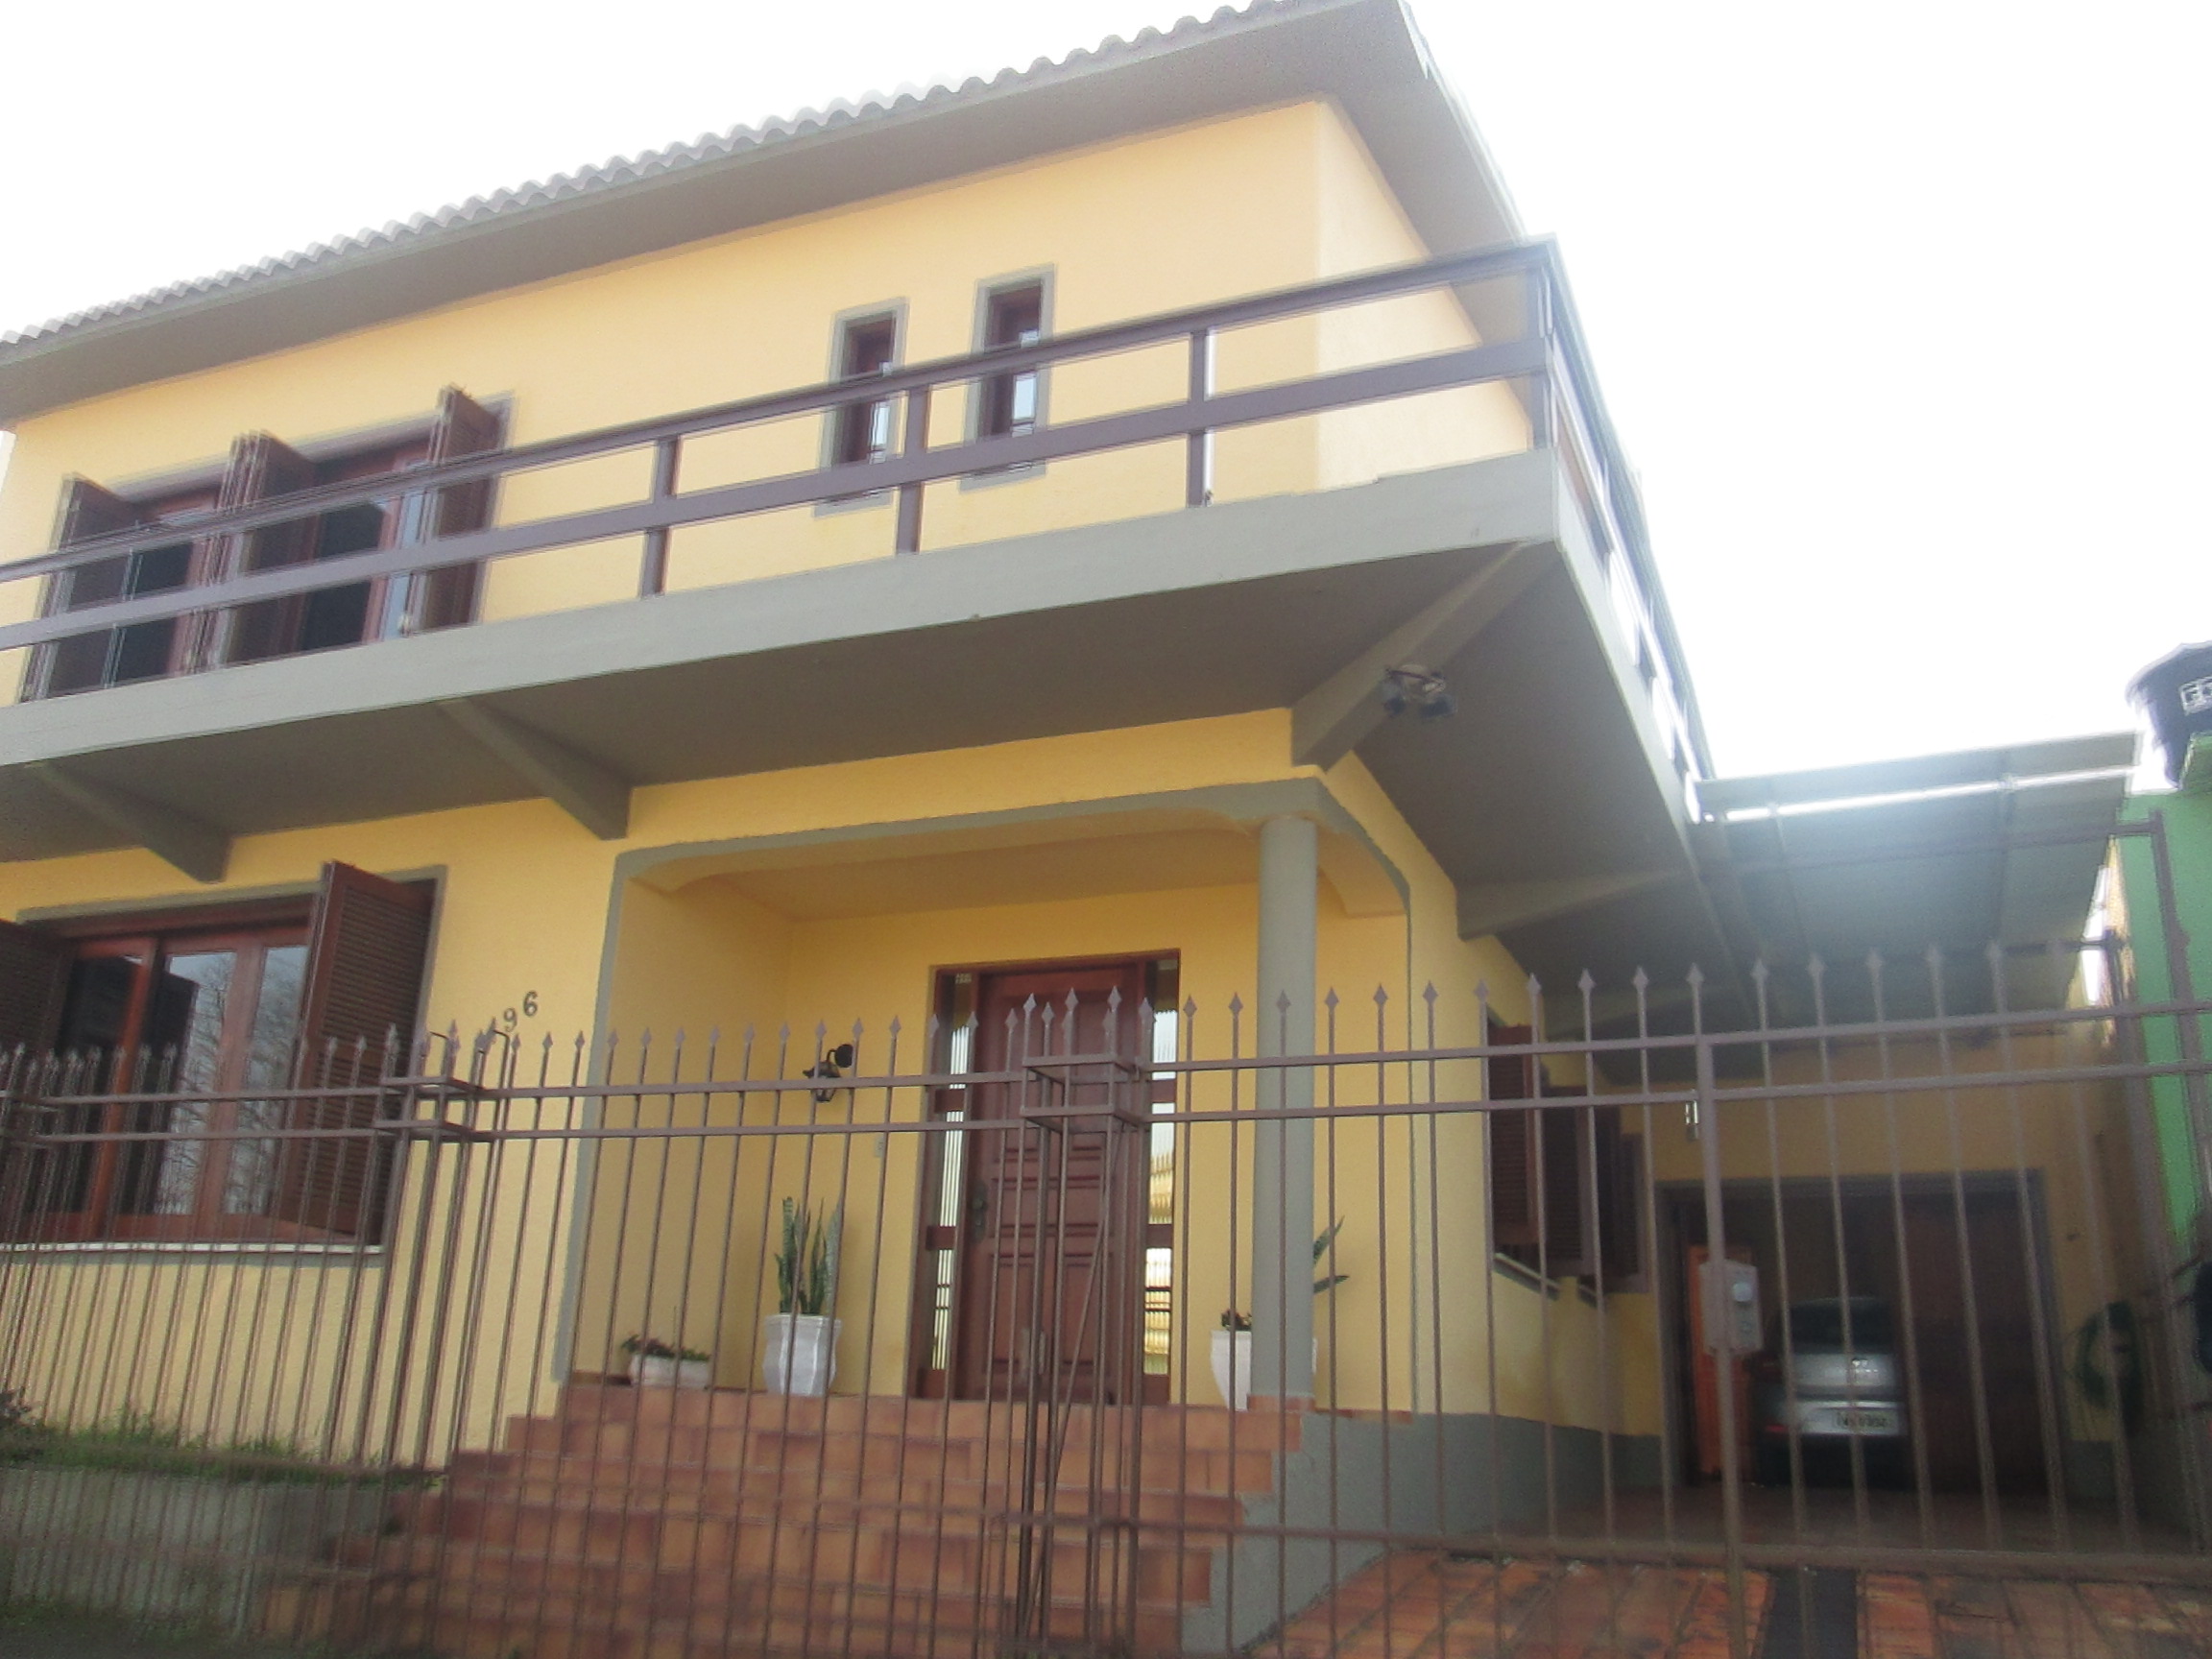 Greice Porto Negócios Imobiliários - Bagé - Excelente imóvel - dois pavimentos,com 3 dormitórios(sendo 1 suite).